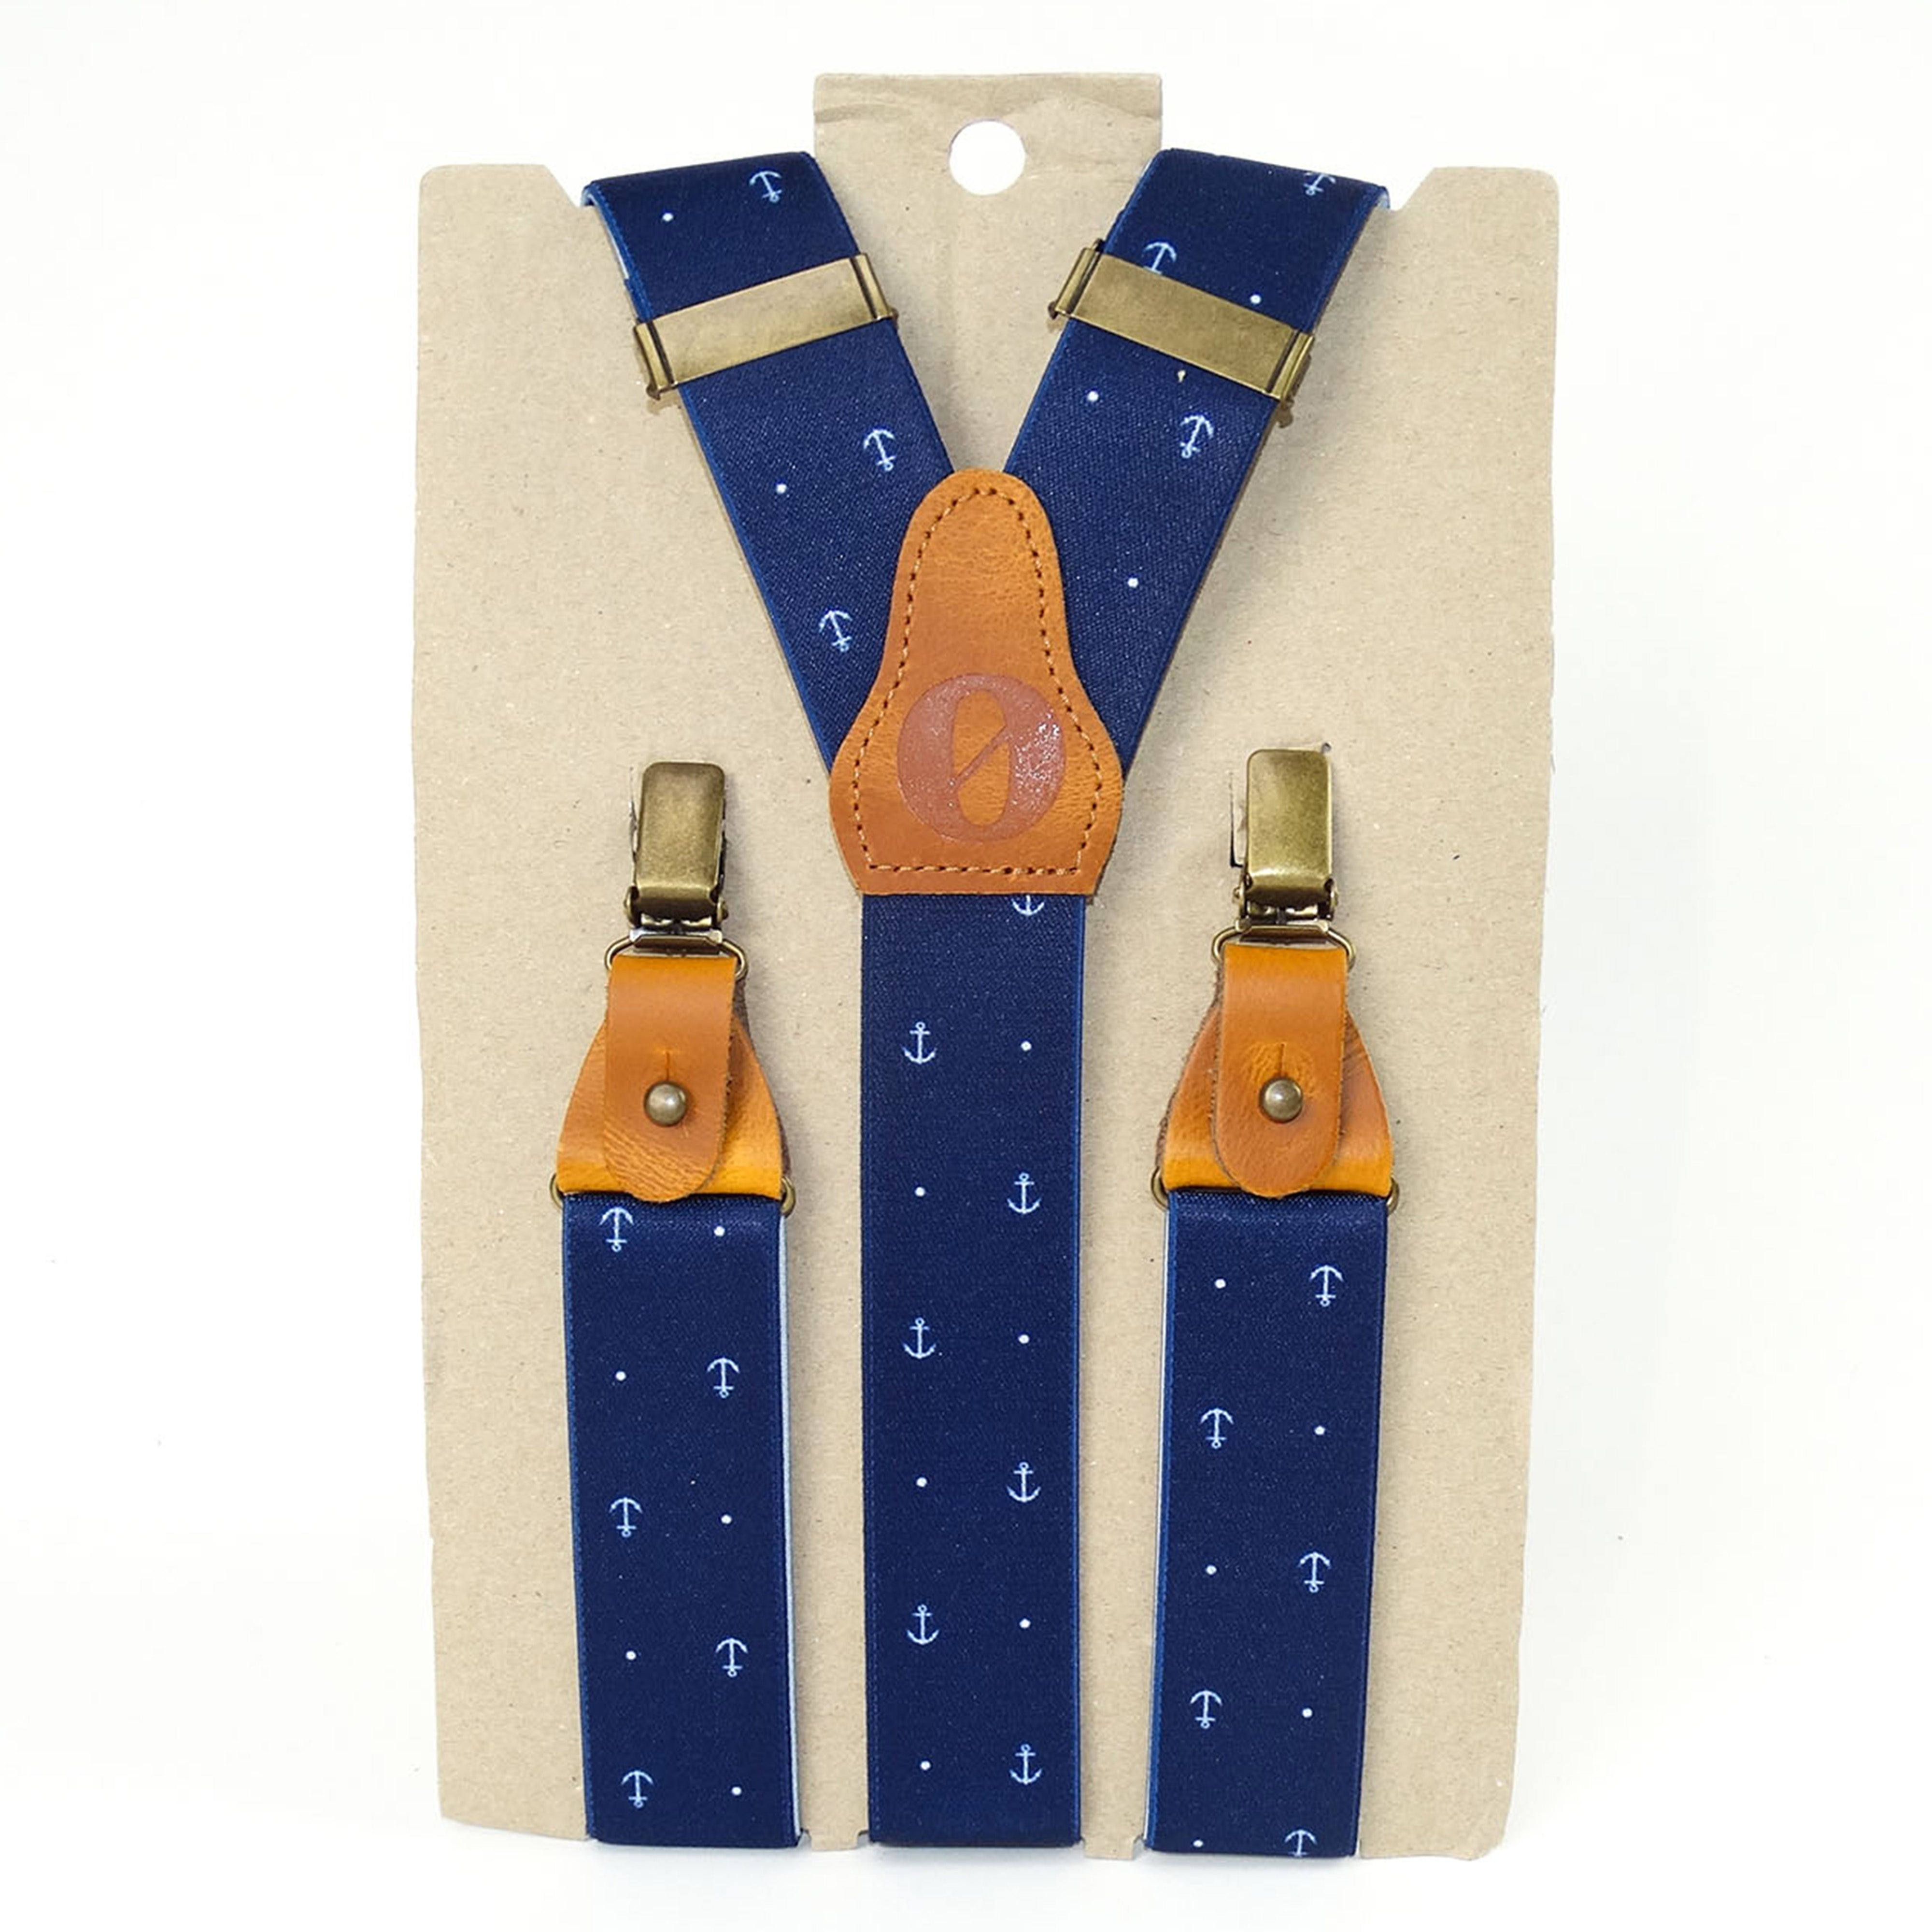 Luxury suspenders in navy anchor-dot design